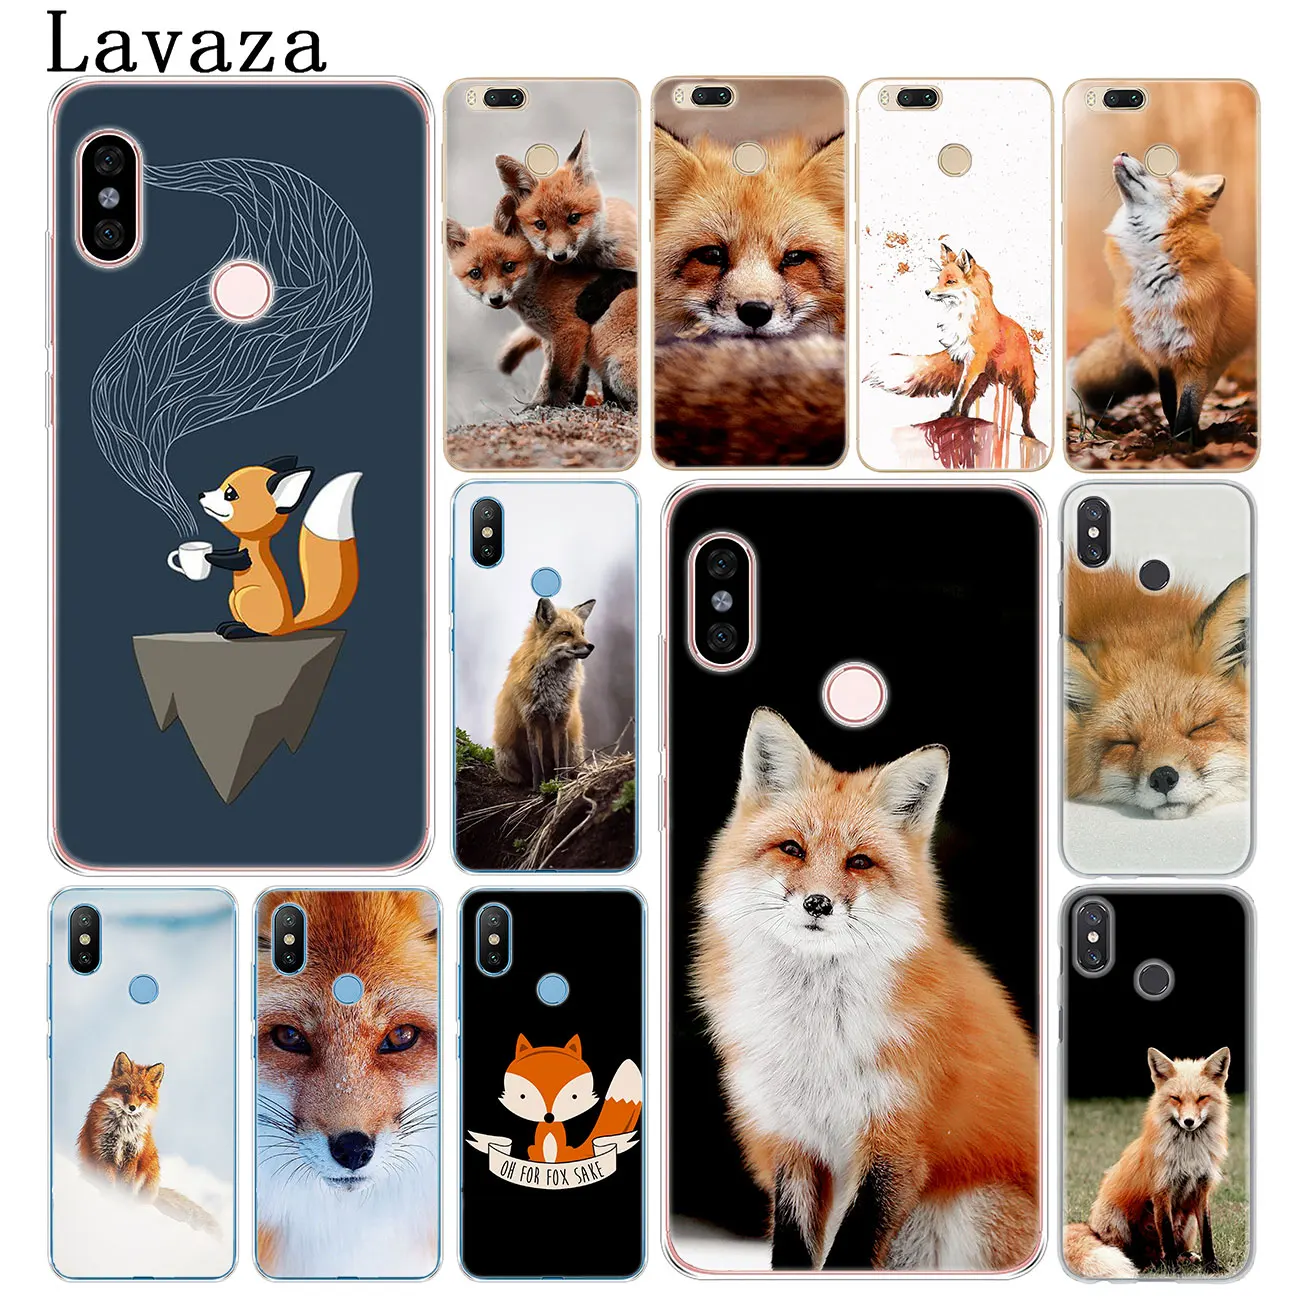 Lavaza аниме лиса Забавный foxs Прекрасный милый жесткий чехол для телефона для Xiaomi Redmi 8A 7A 6A 5A 4A K20 Note 8 7 5 6 Pro Plus 4 4X